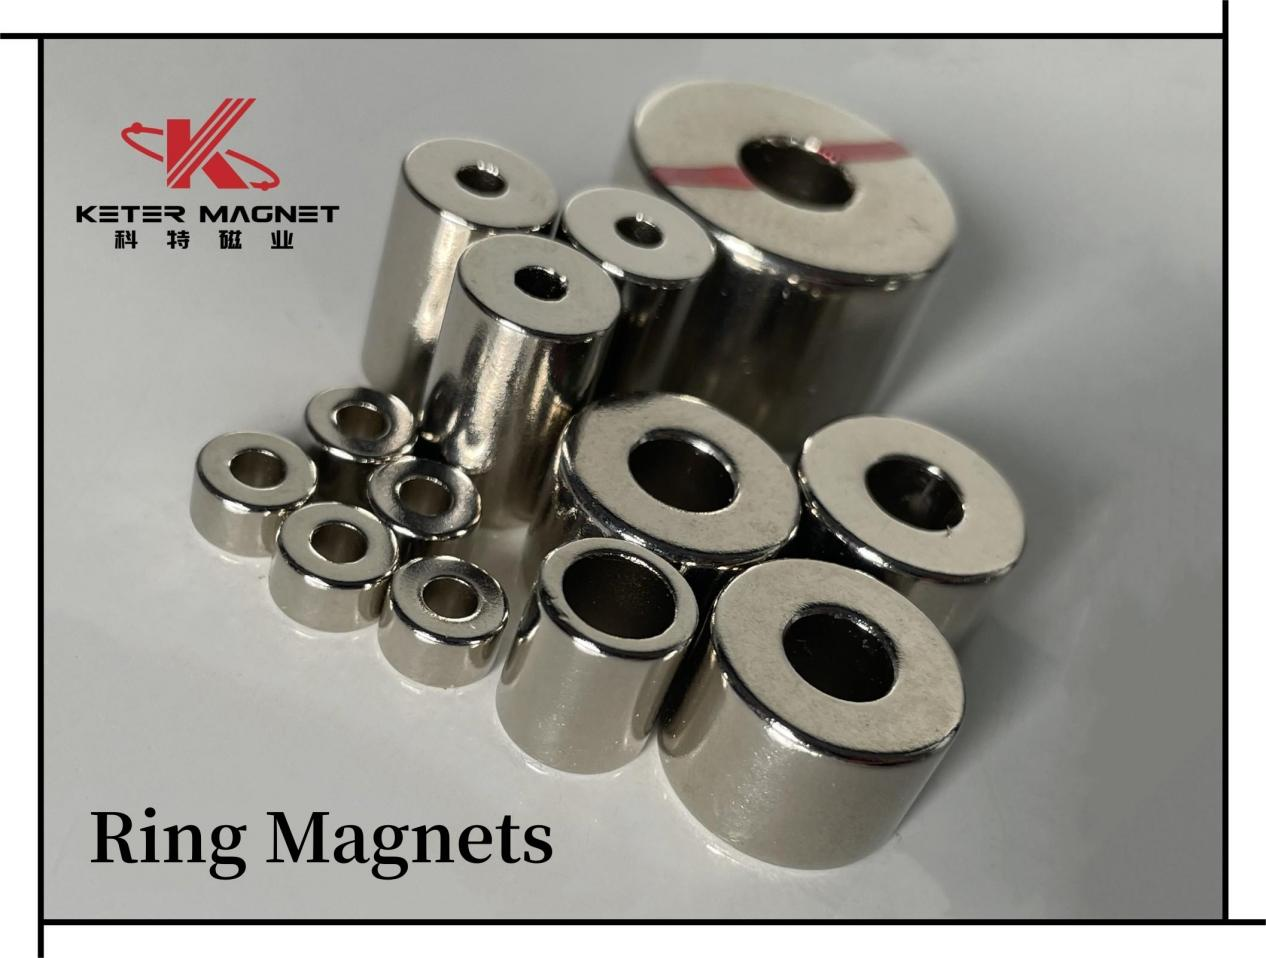 环形磁铁适用于不同用途